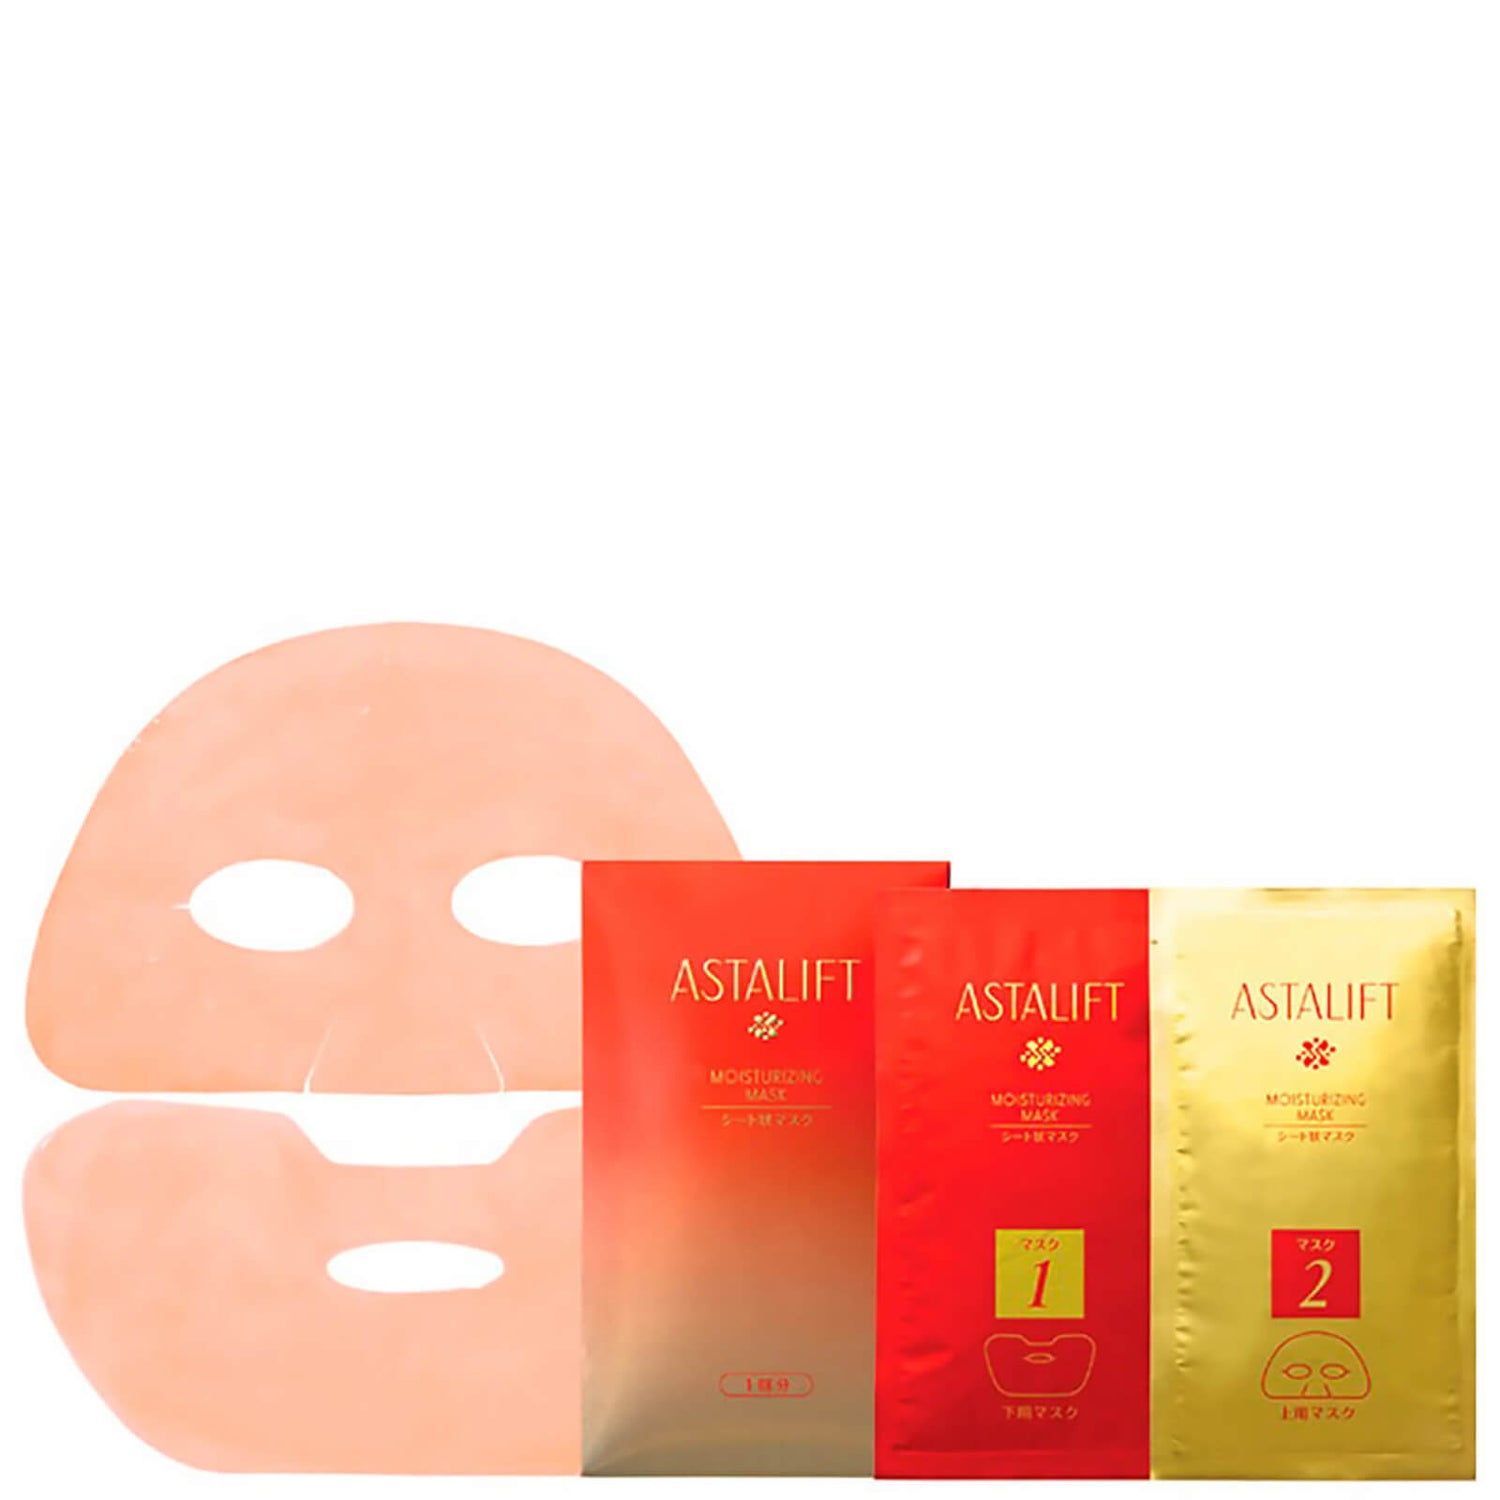 Astalift Intensive straffende Maske Single Pack - Einzelverpackung (35 ml)